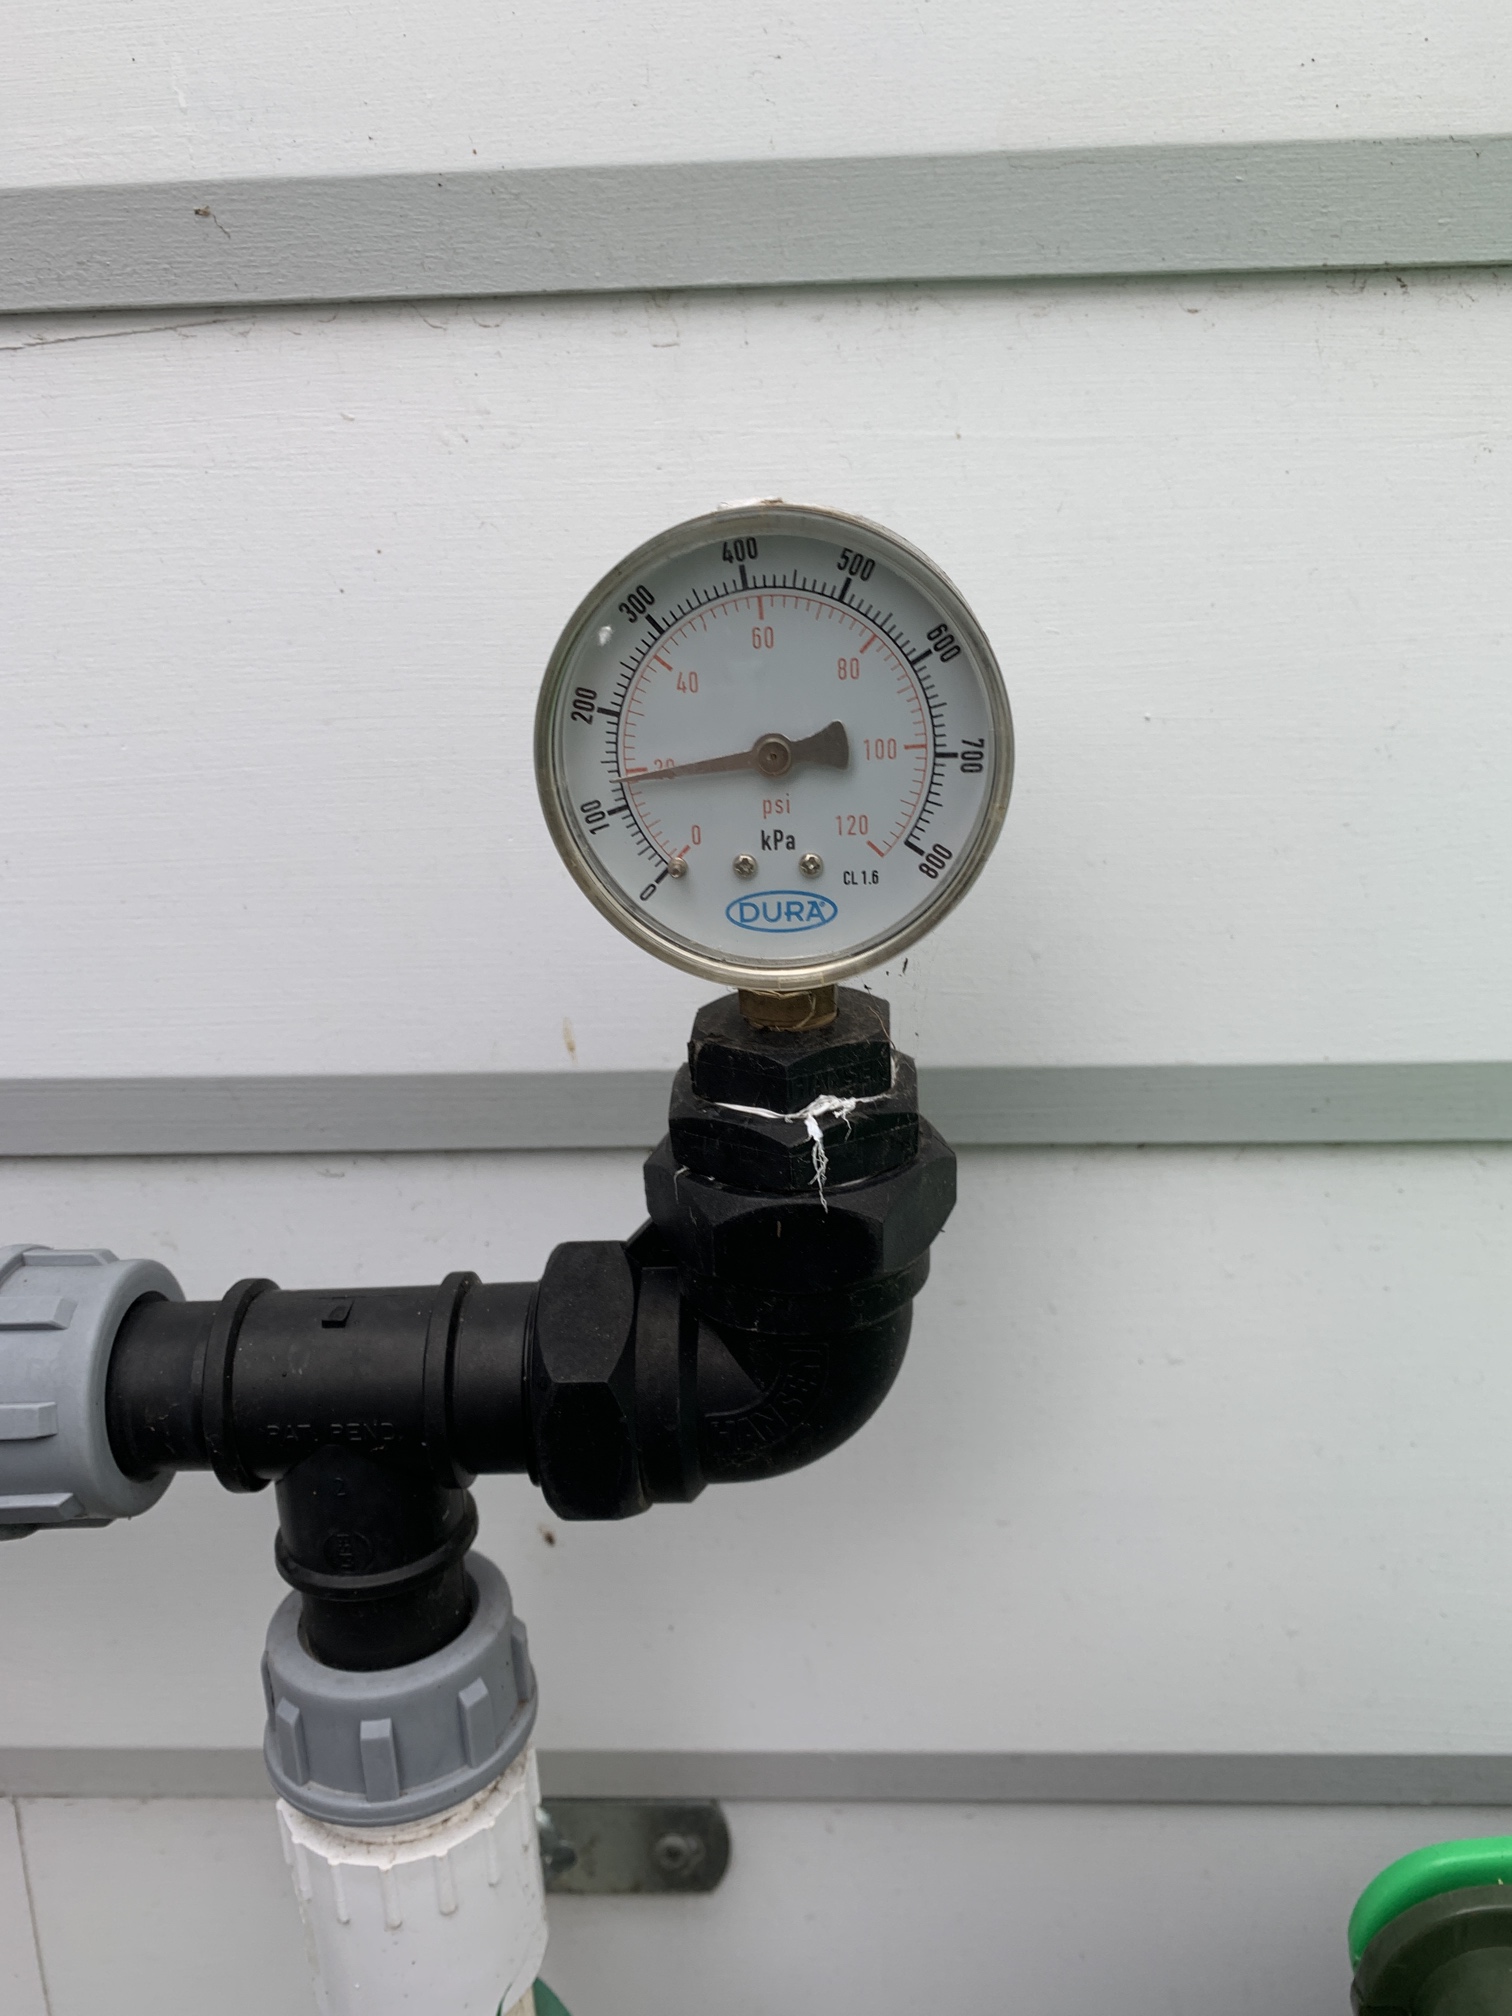 A simple pressure sensor installed on a sprinkler system